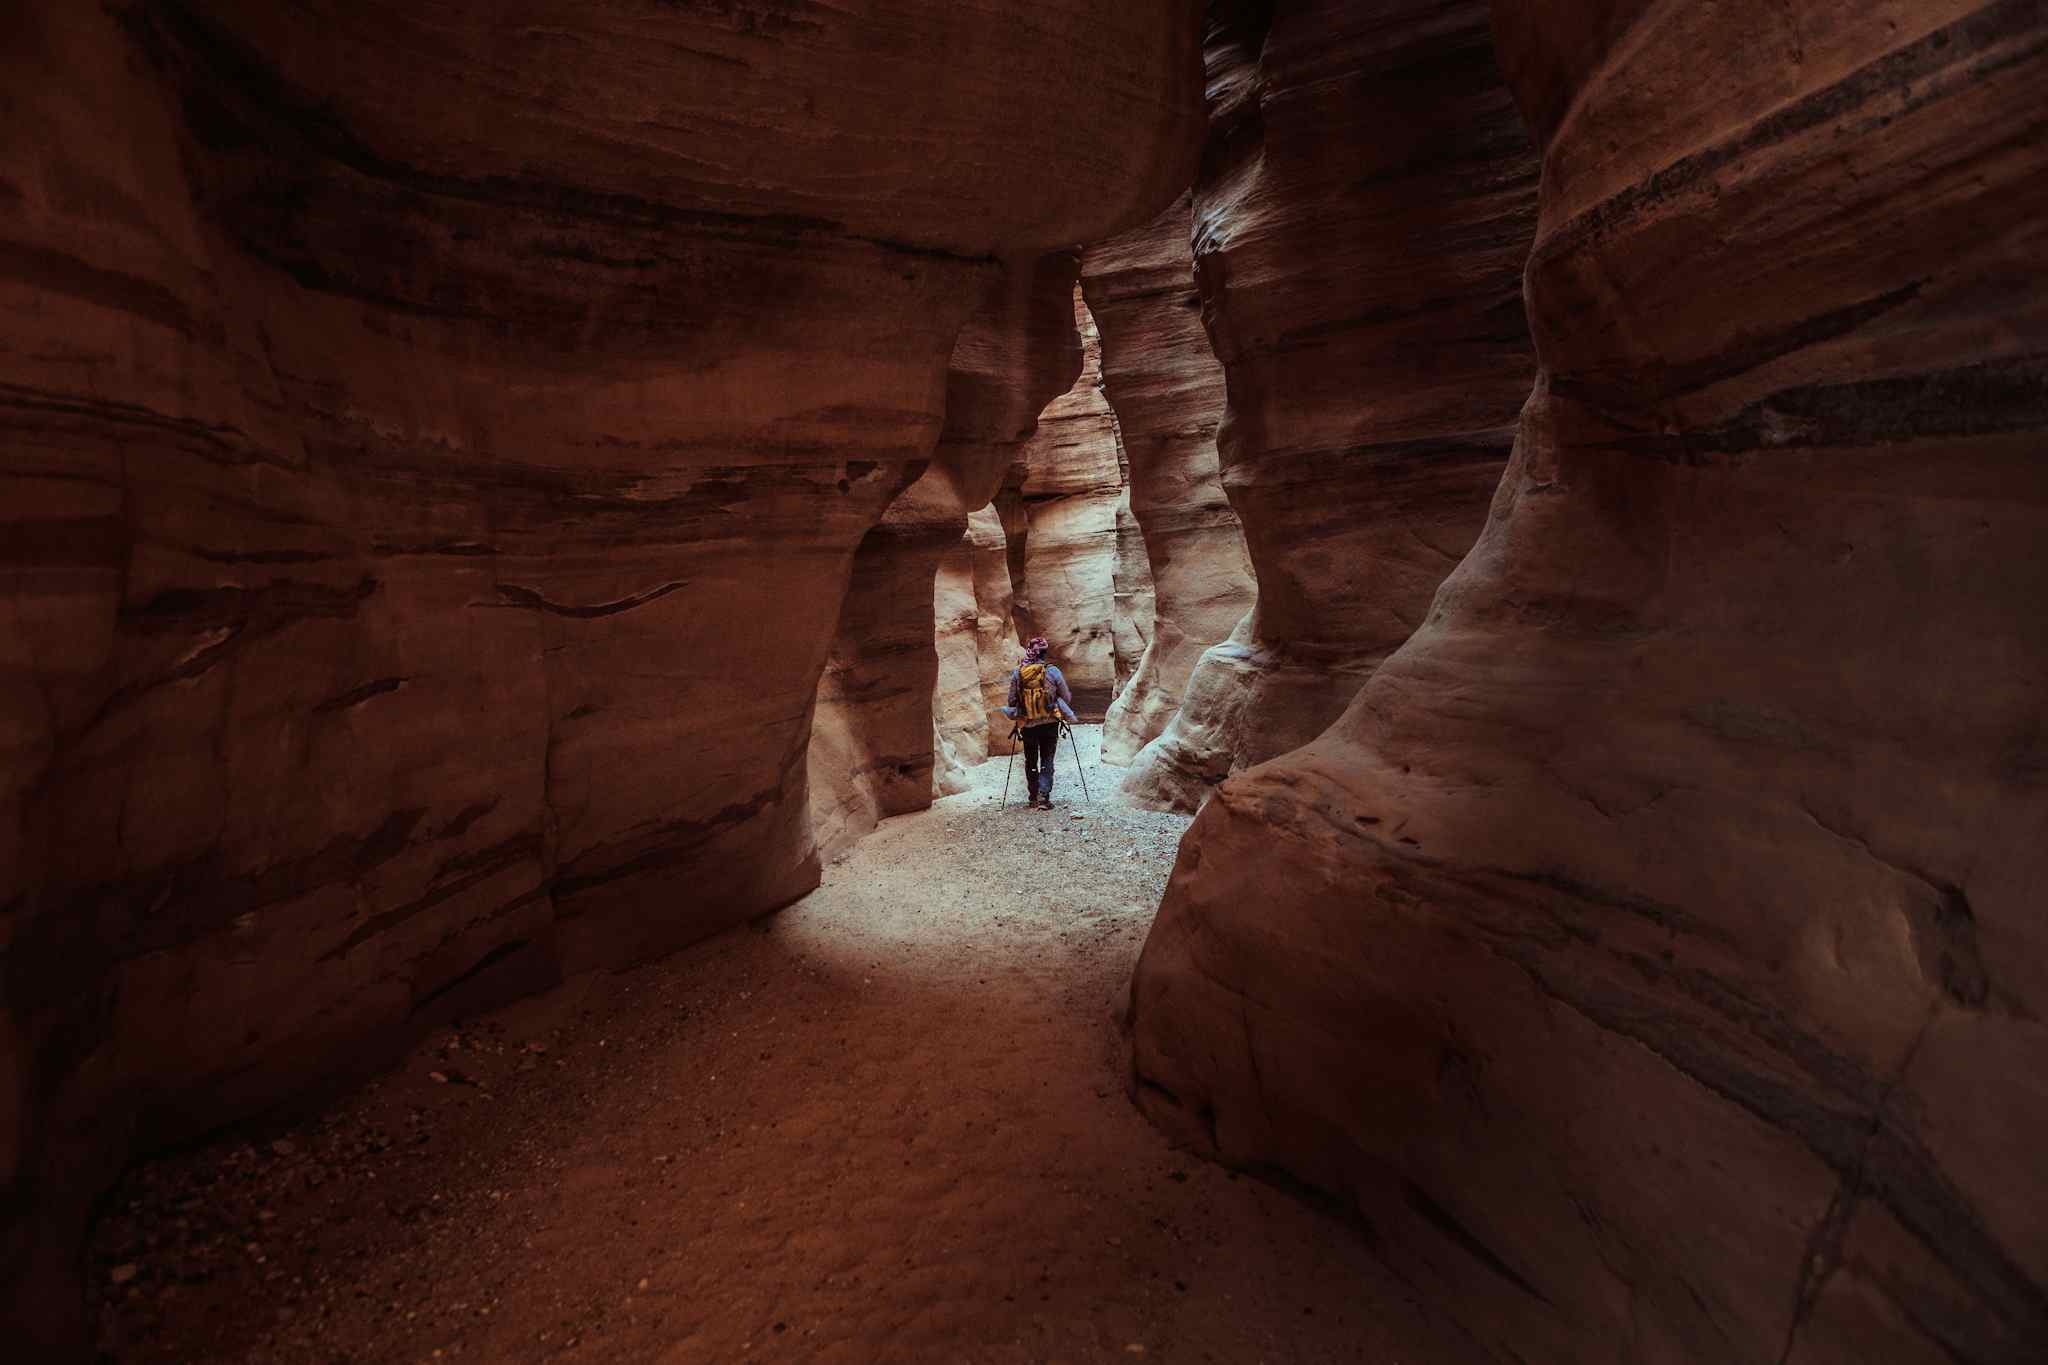 The Jordan Trail
Host image - Experience Jordan